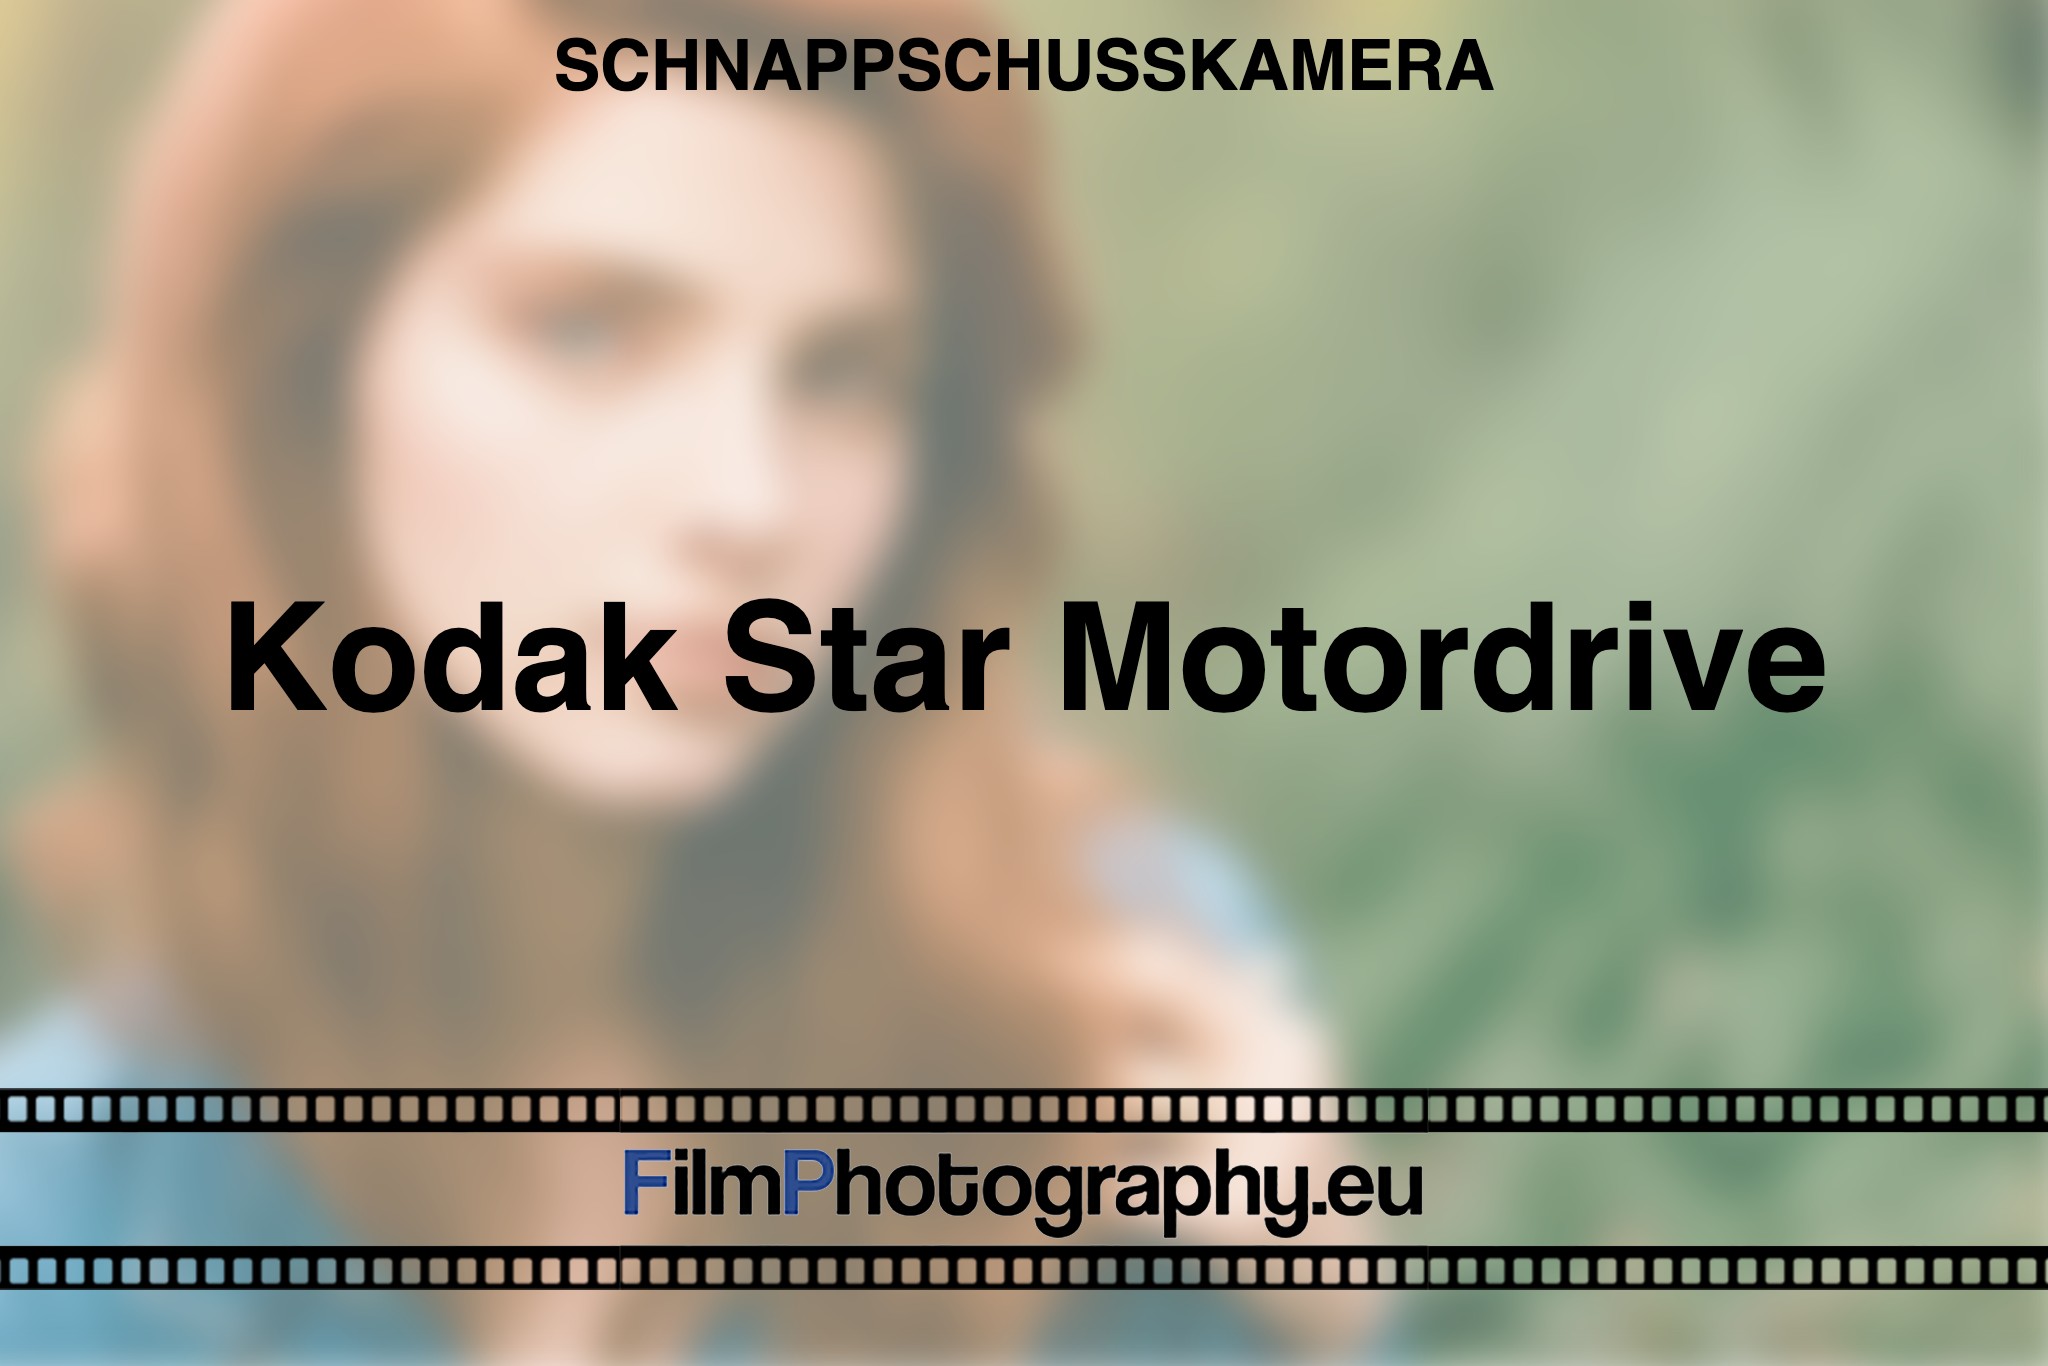 kodak-star-motordrive-schnappschusskamera-bnv